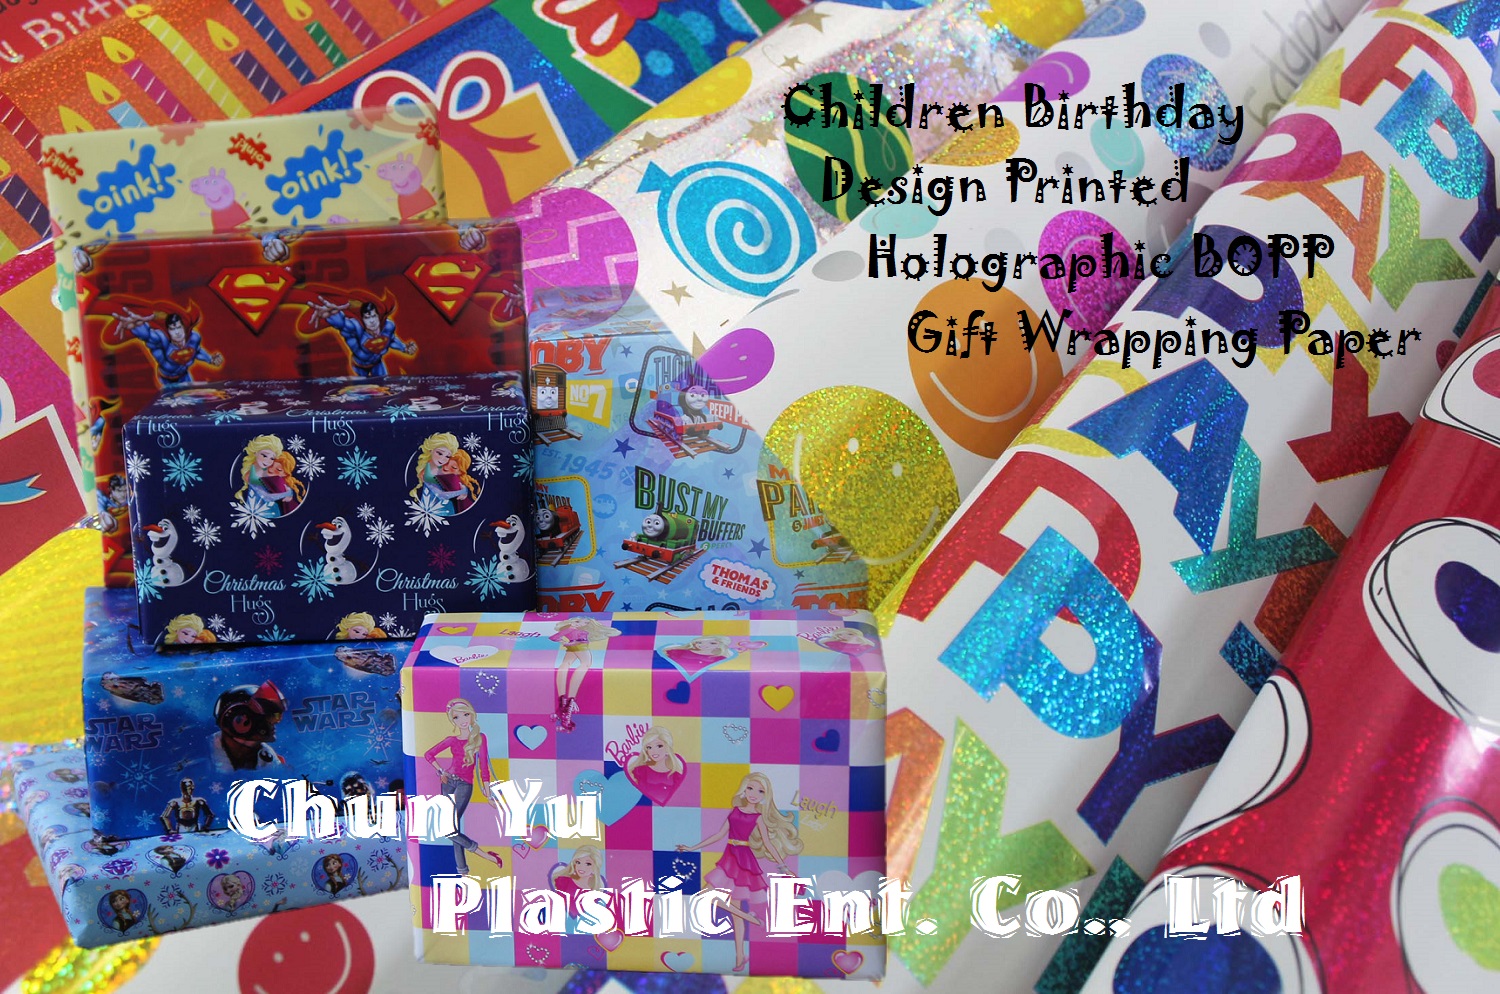 Голографічний подарунковий папір BOPP, надрукований із веселим та милим дизайном для дітей та днів народження.